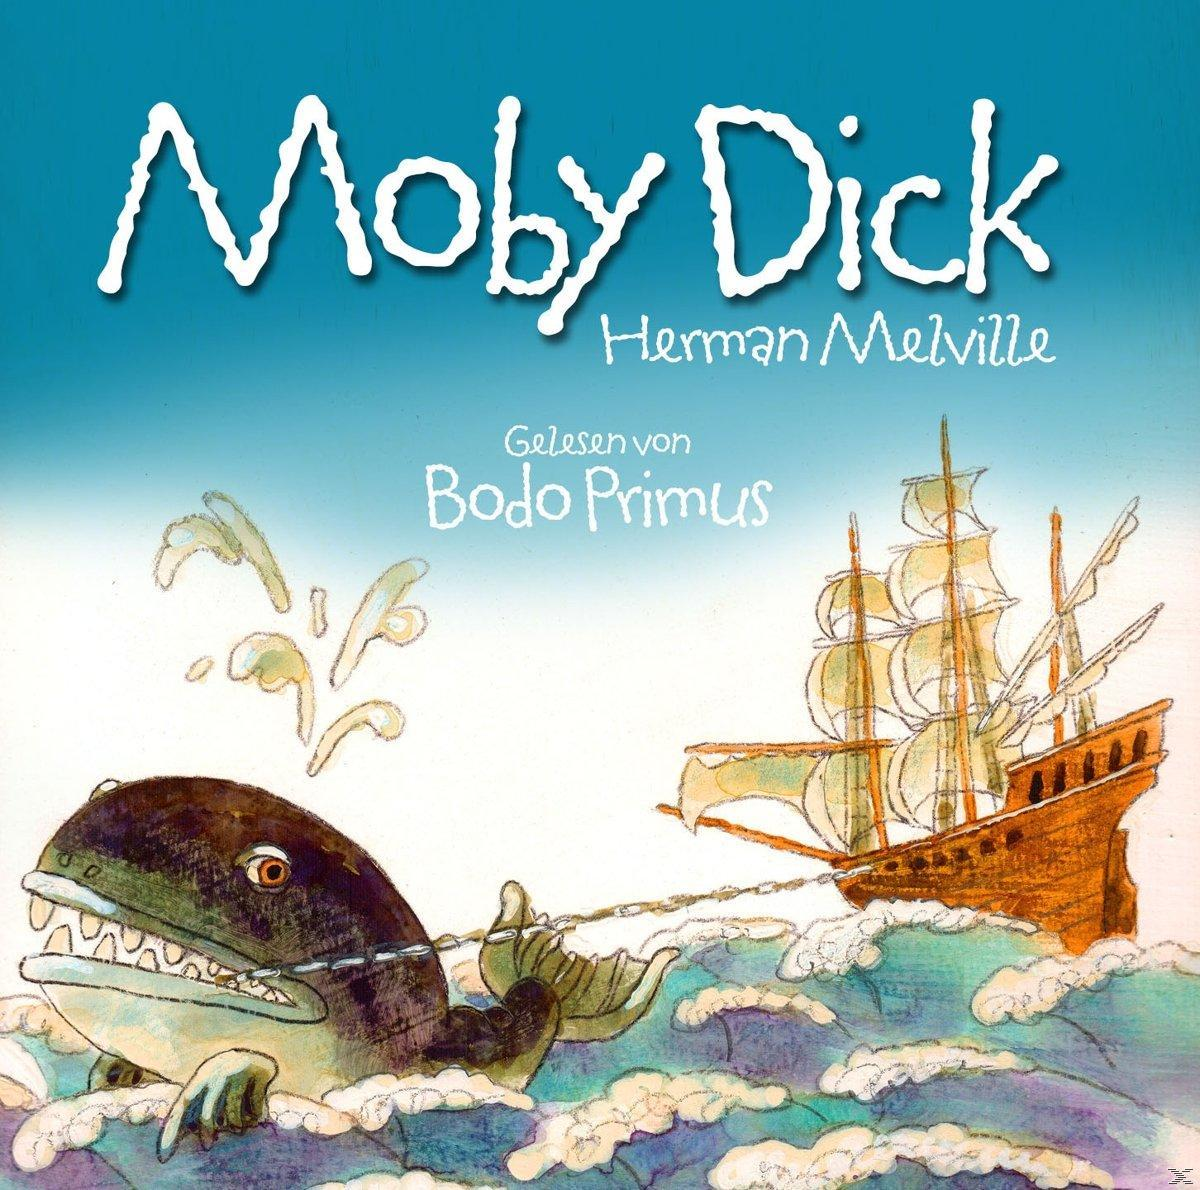 (CD) Von Moby Bodo Gelesen Primus Von - Melville Dick Herman -